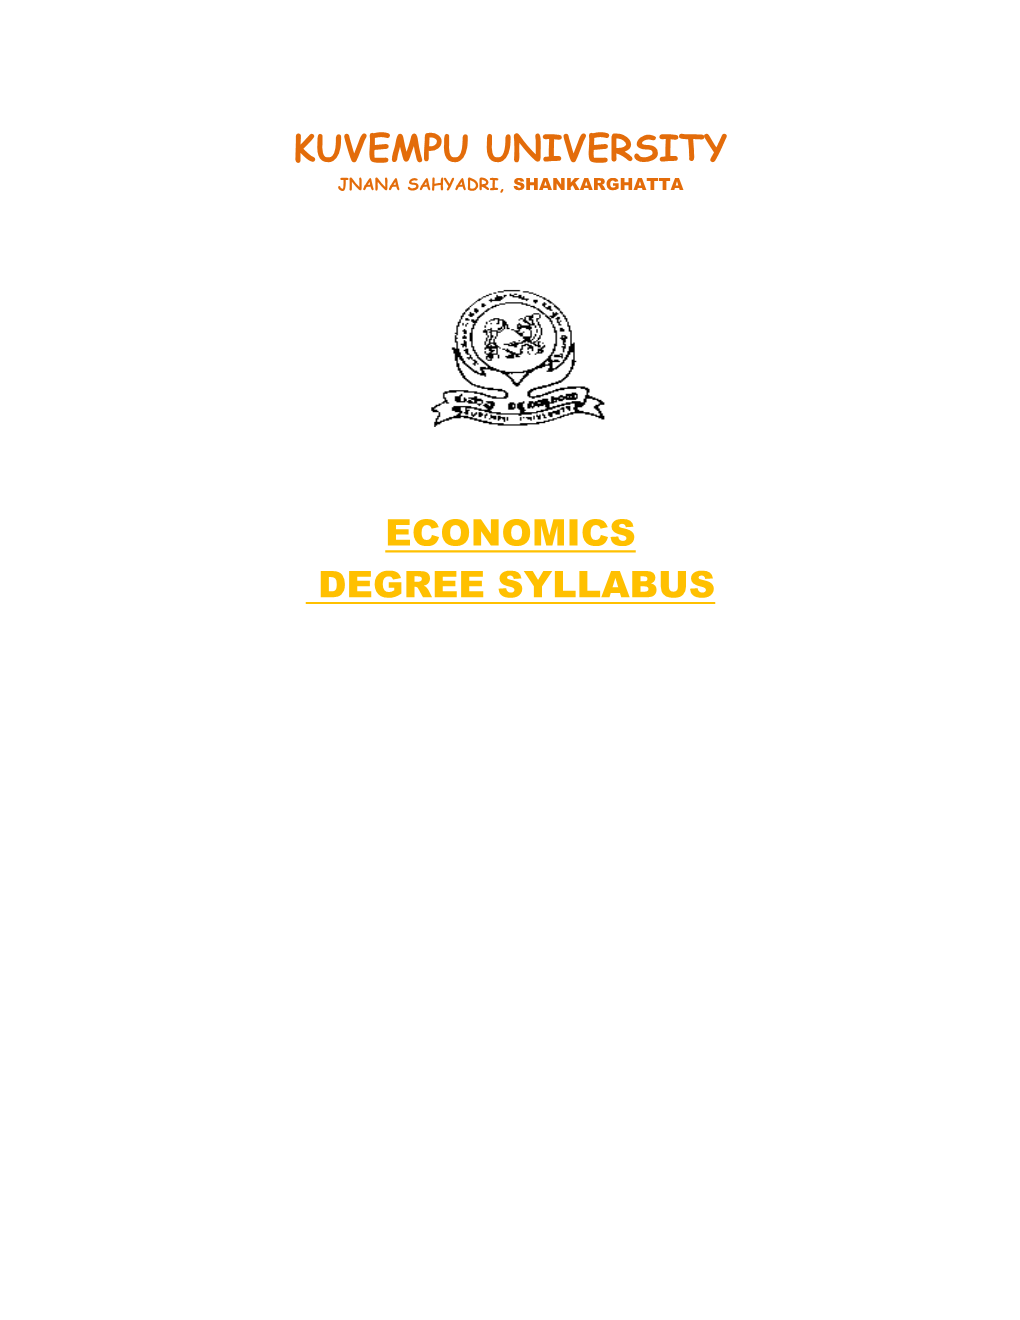 Kuvempu University Economics Degree Syllabus